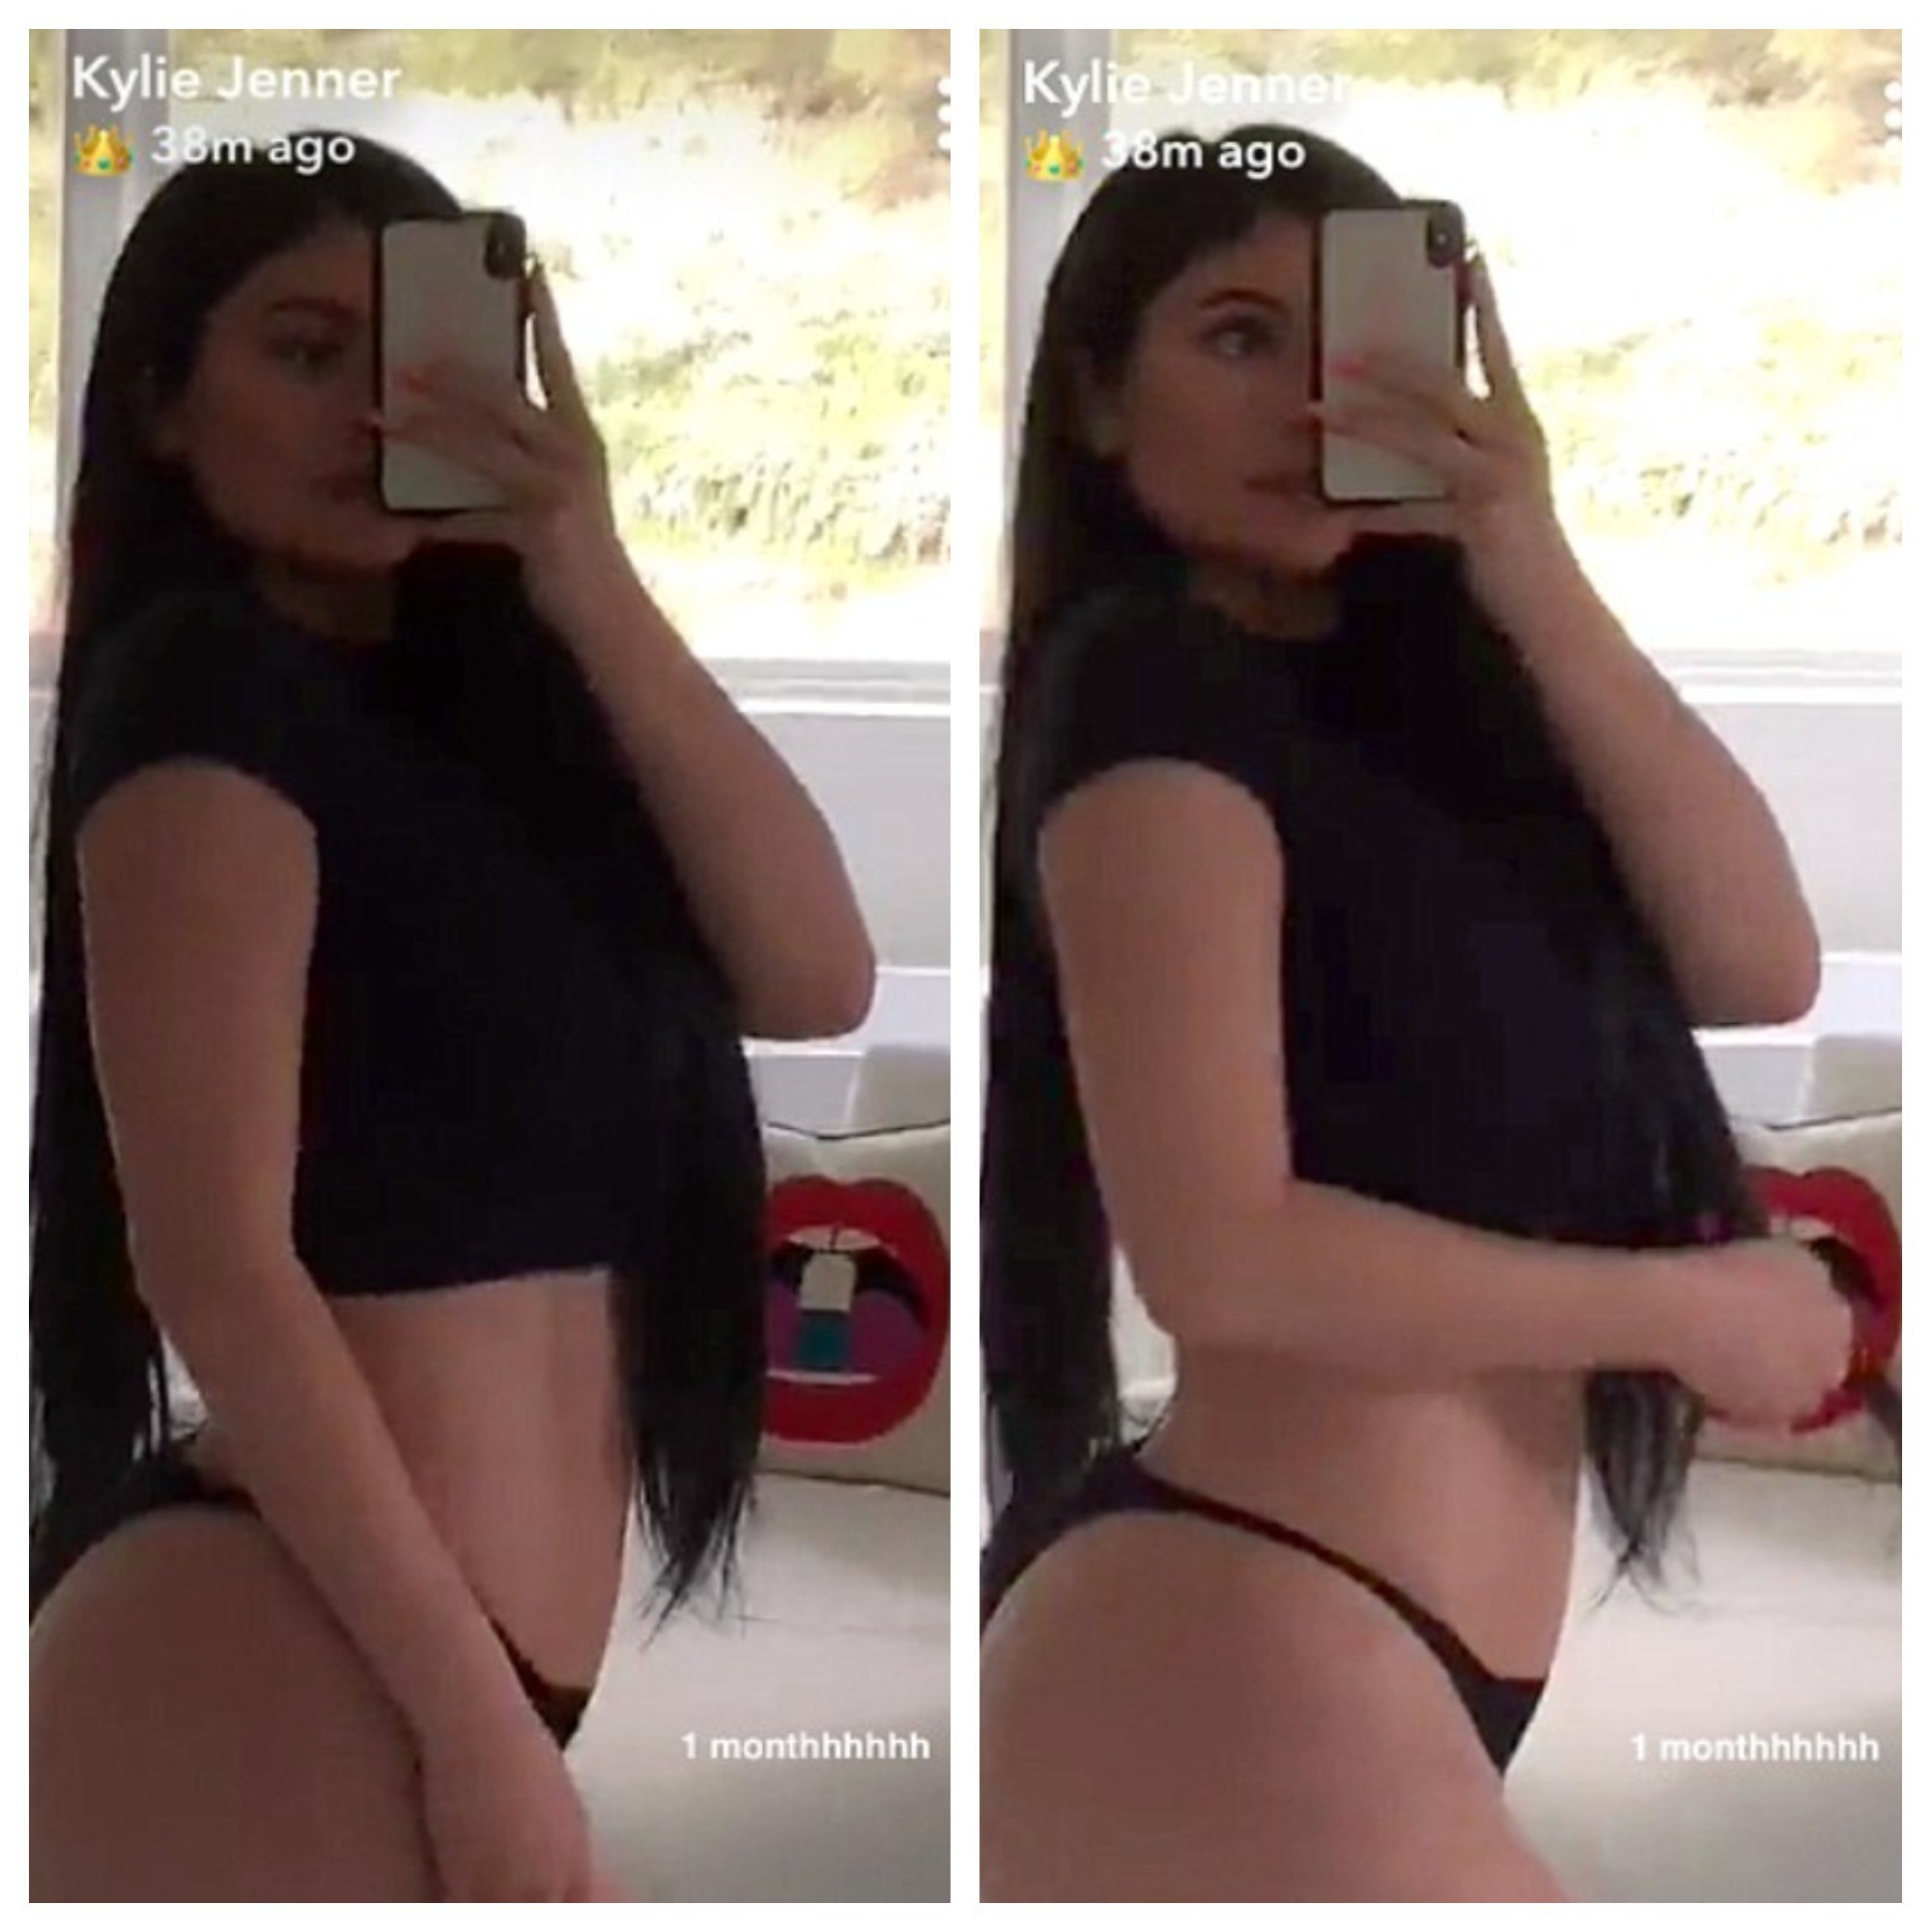 На видеозаписи в Snapchat 20-летняя модель позирует в коротком чёрном топе и тоненьком бикини / Фото © dailymail.co.uk